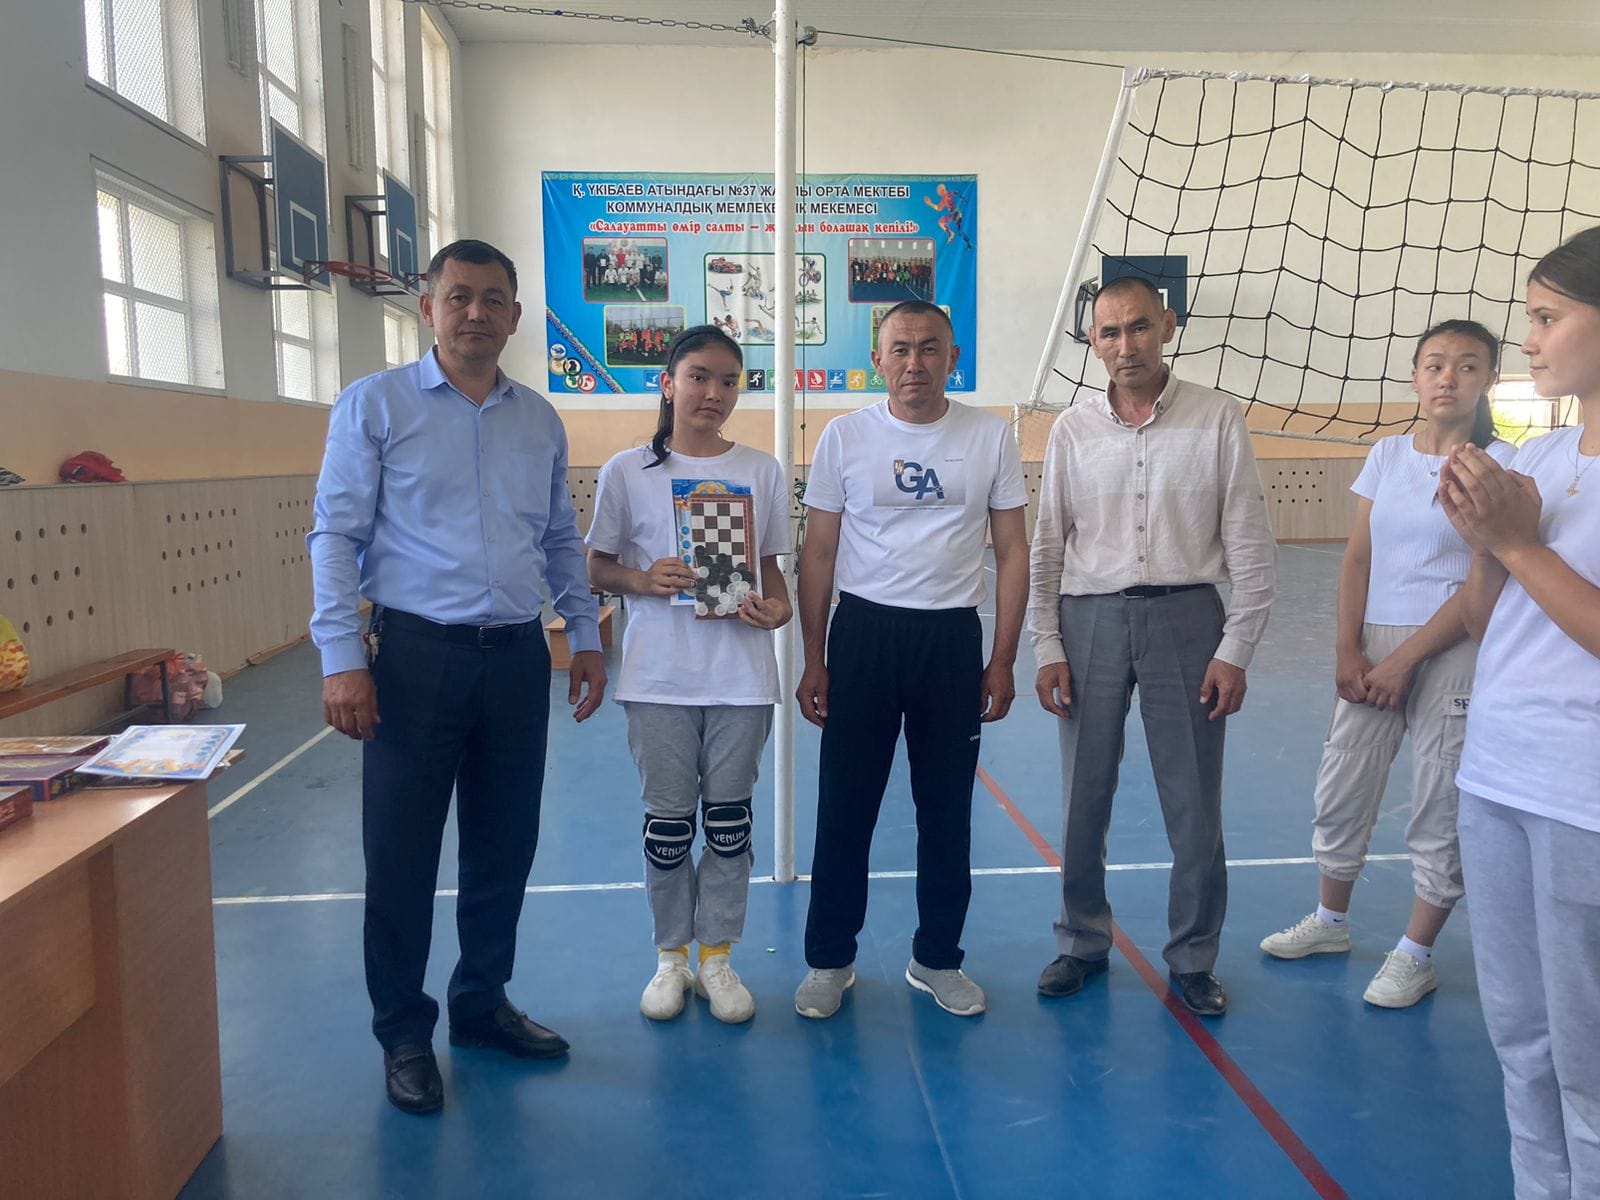 Қ Үкібаев атындағы №37 жалпы орта мектебі Education Department of Kerbulak districtнде"волейбол" турнирі болып өтті.